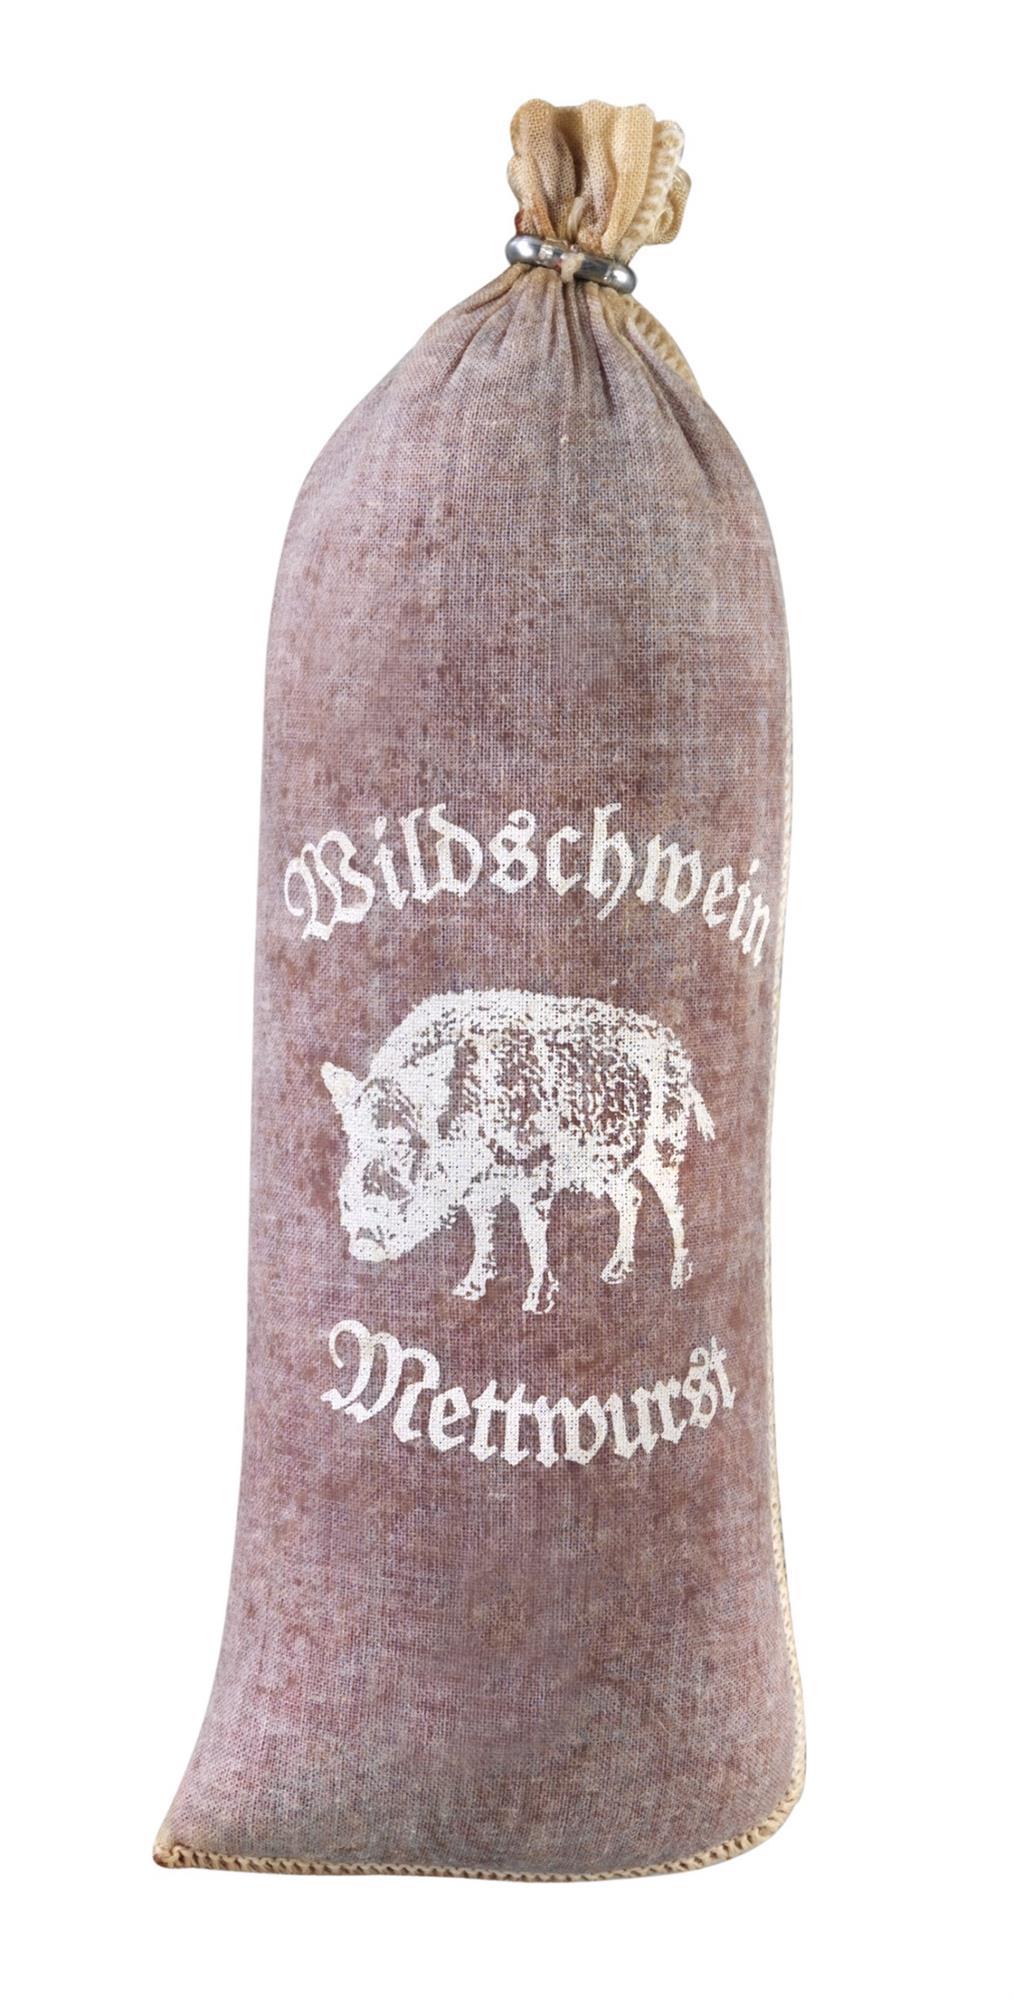 25 Stück Textildarm"Wildschwein-Mettwurst" Kaliber 60/25